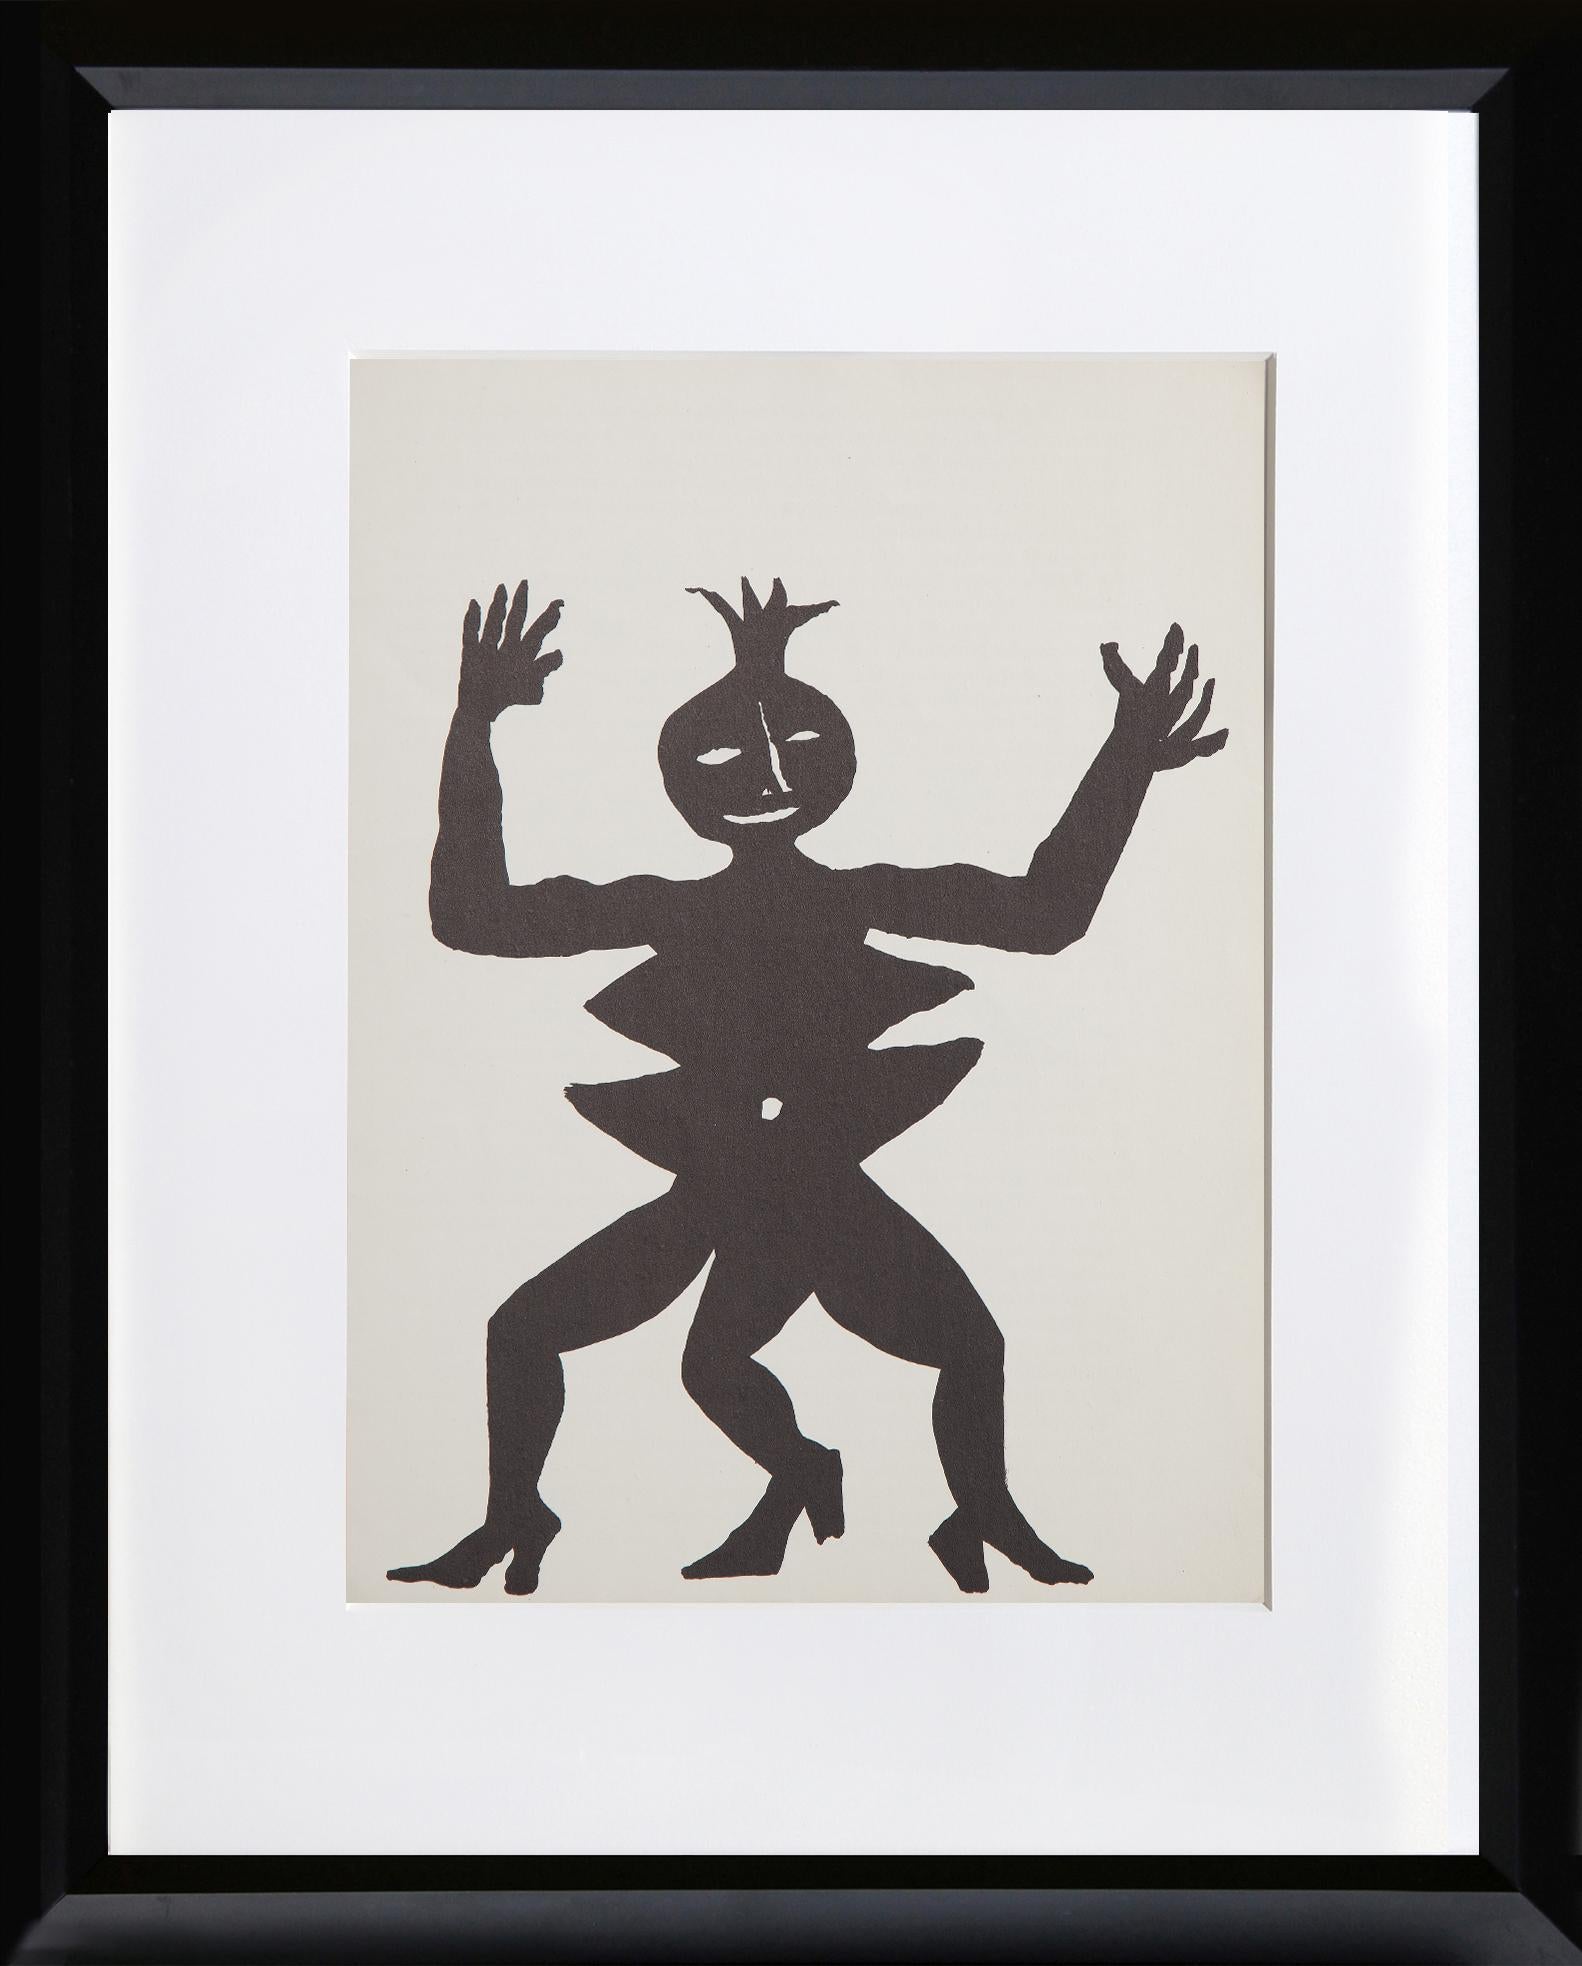 Akrobatin auf Absätzen aus Derriere Le Miroir von Alexander Calder, Amerikaner (1898-1976)
Datum: 1975
Lithographie
Größe: 15 x 11 Zoll (38,1 x 27,94 cm)
Drucker: Maeght, Paris
Verlag: Maeght Editeur, Paris